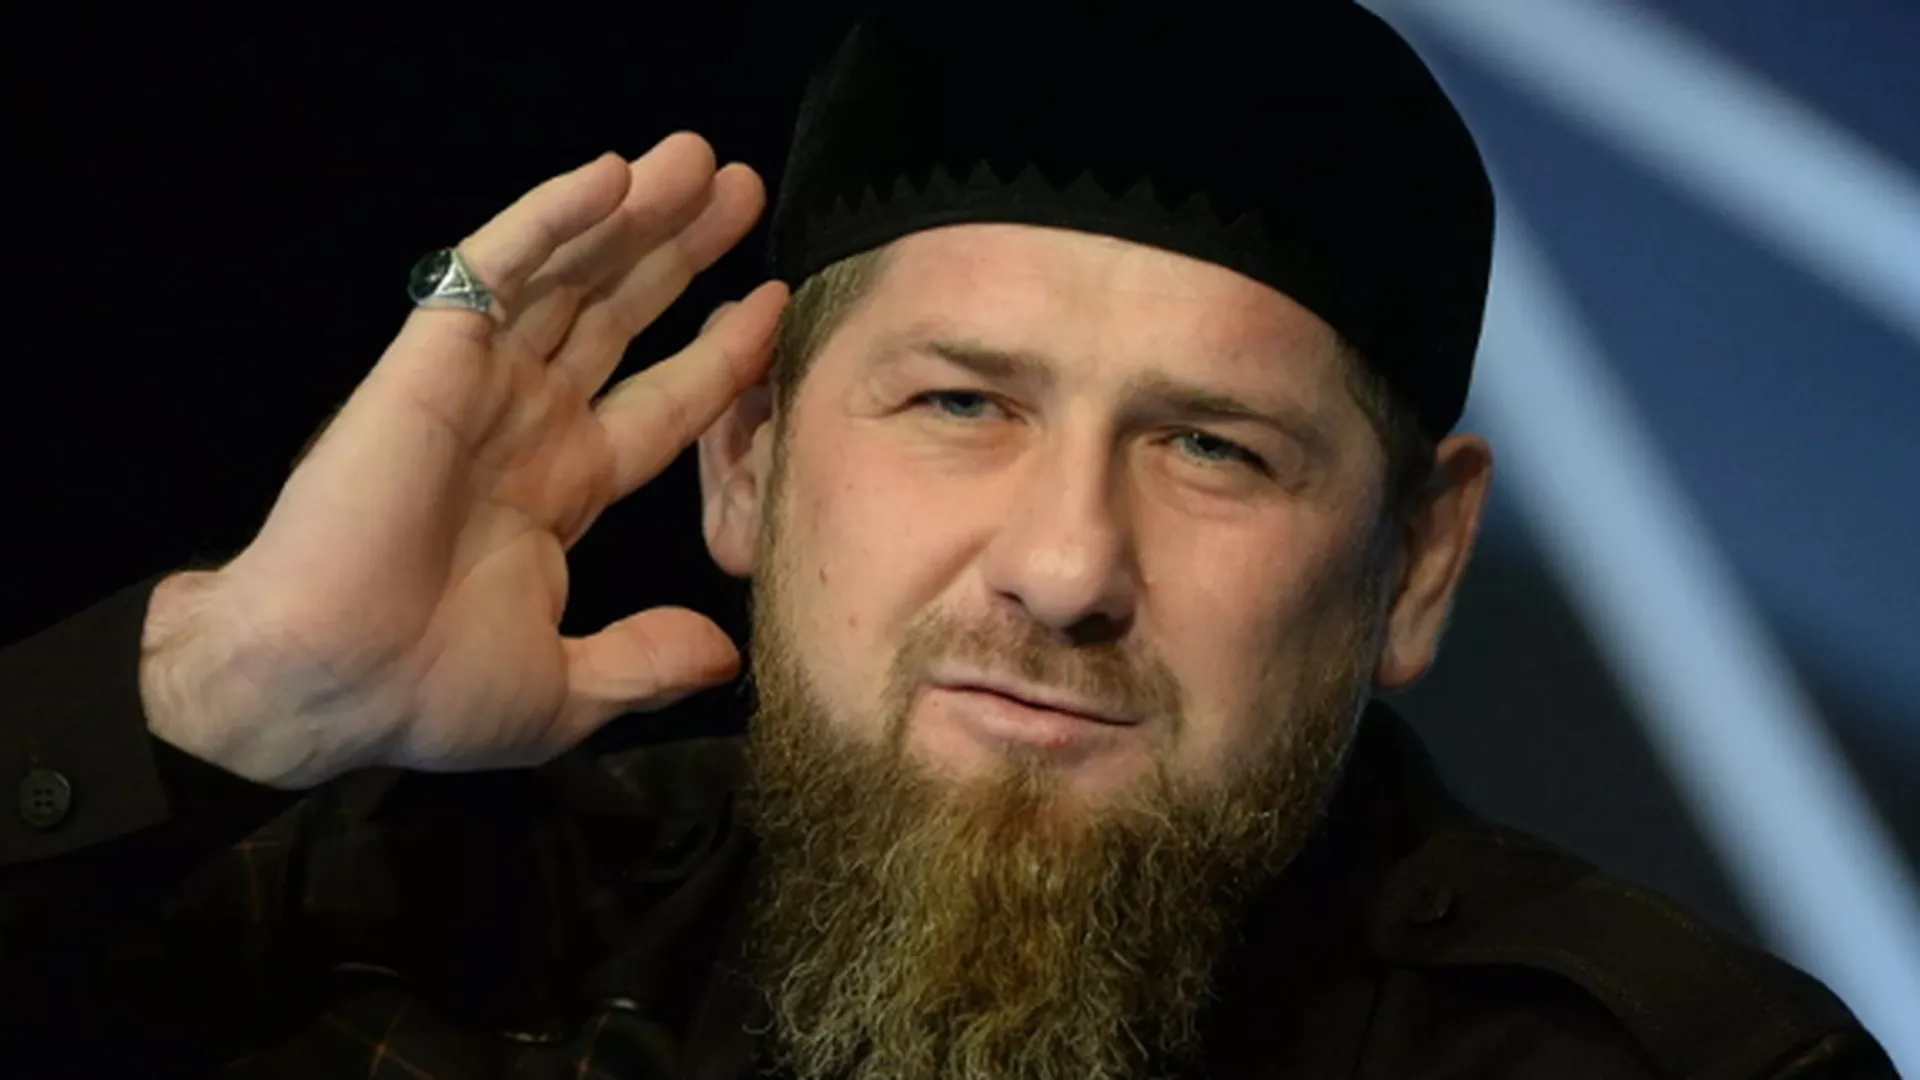 Кадыров назвал Макрона «вдохновителем террористов»